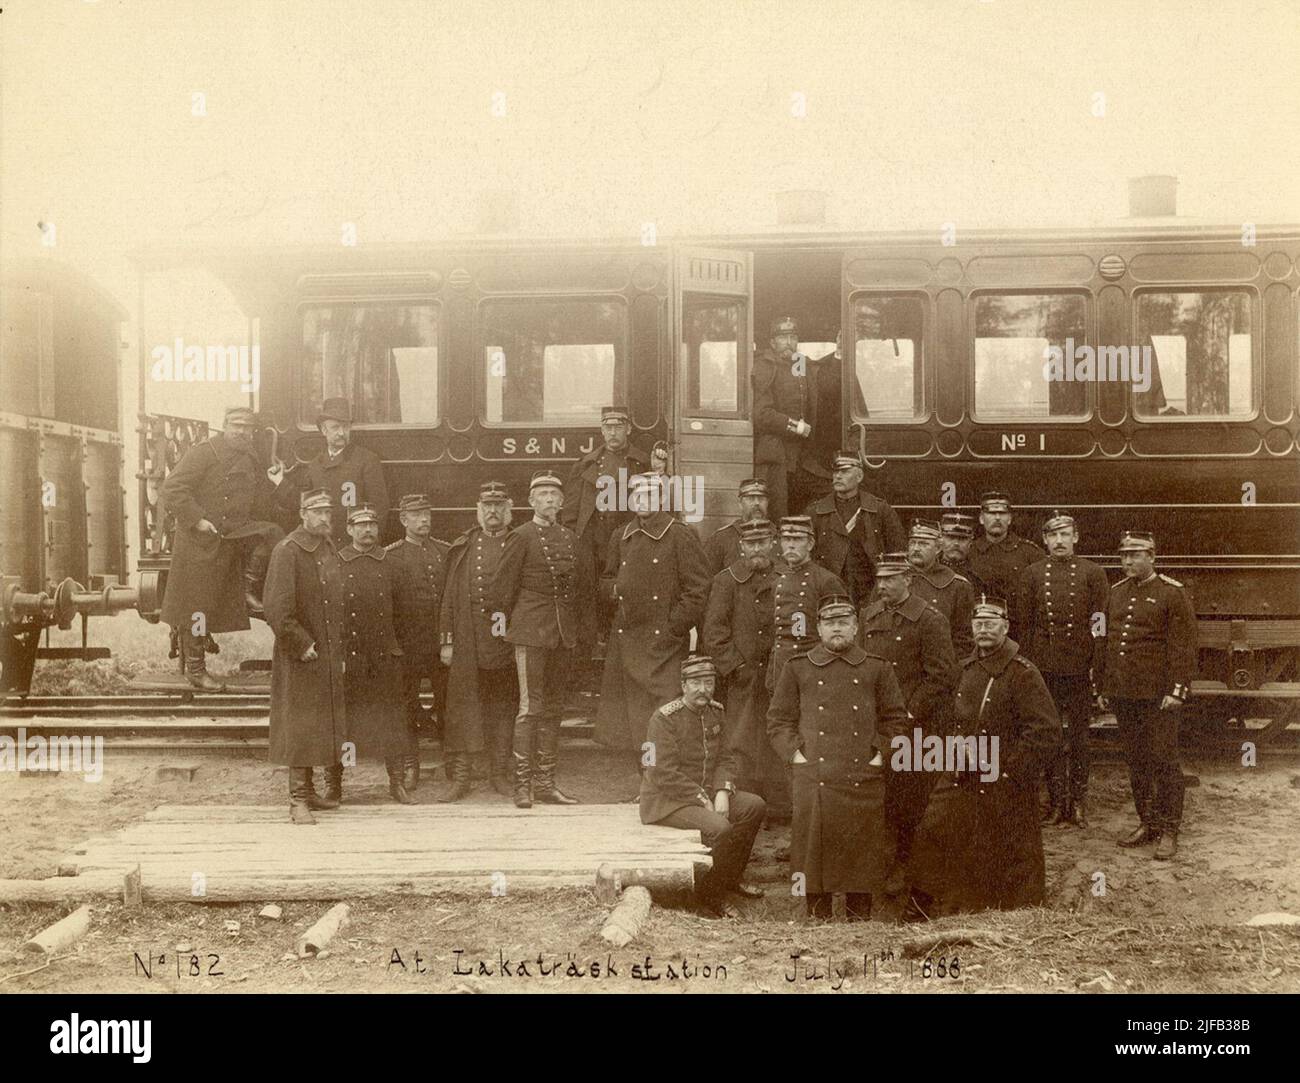 Ritratto di gruppo di ufficiali a Svea Artillery Regiment A 1 fuori da una macchina ferroviaria alla stazione di Lakaträsk nel 1888. Foto Stock